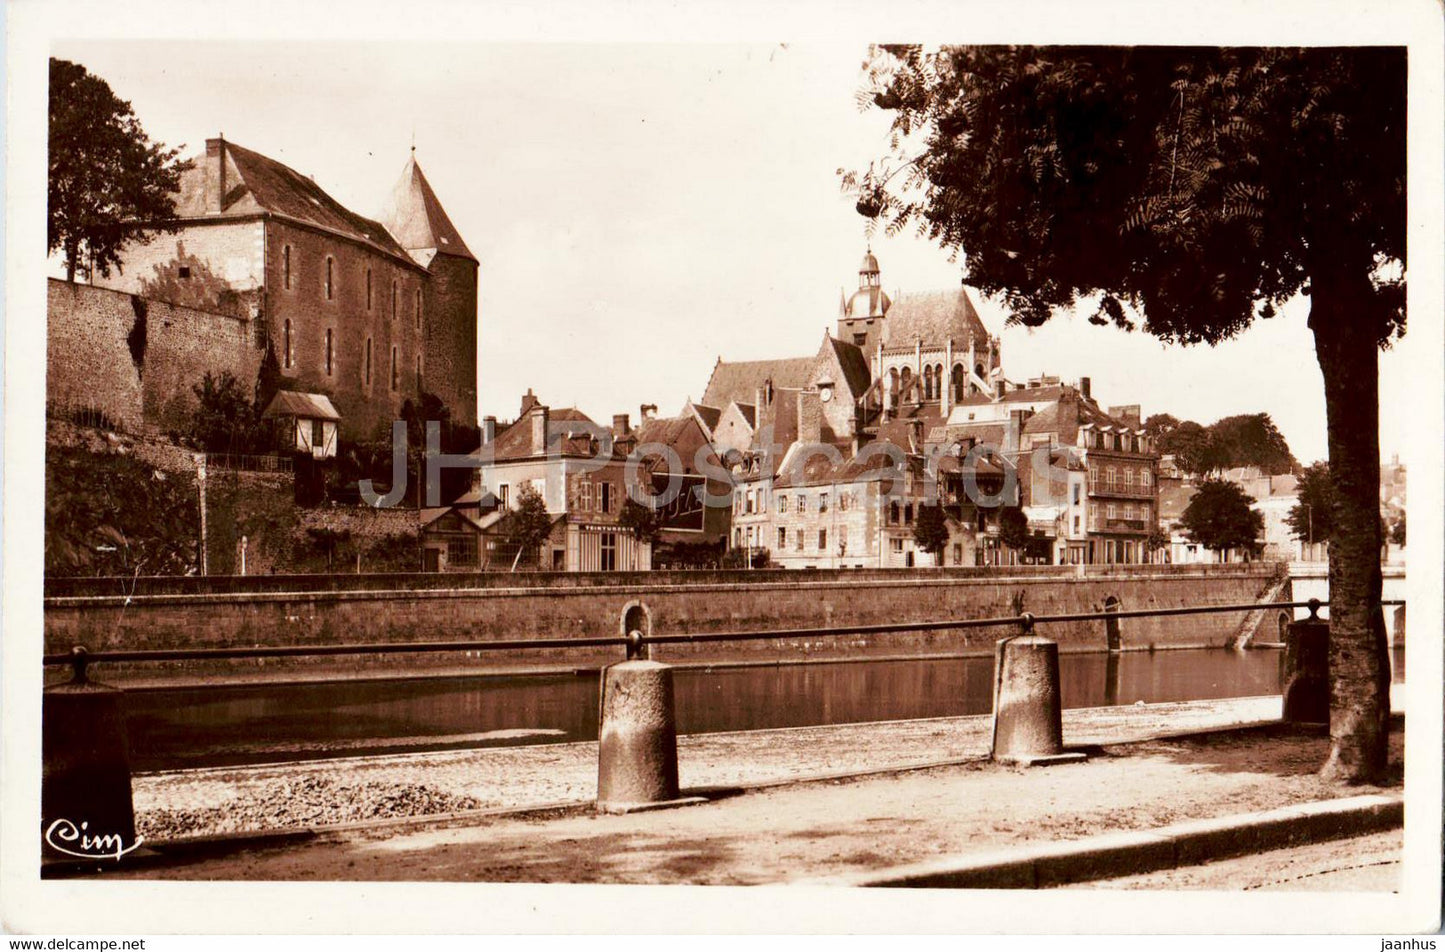 Mayenne - Quai Carnot et l'ancien Chateau - Bibliotheque actuelle - old postcard - France - unused - JH Postcards